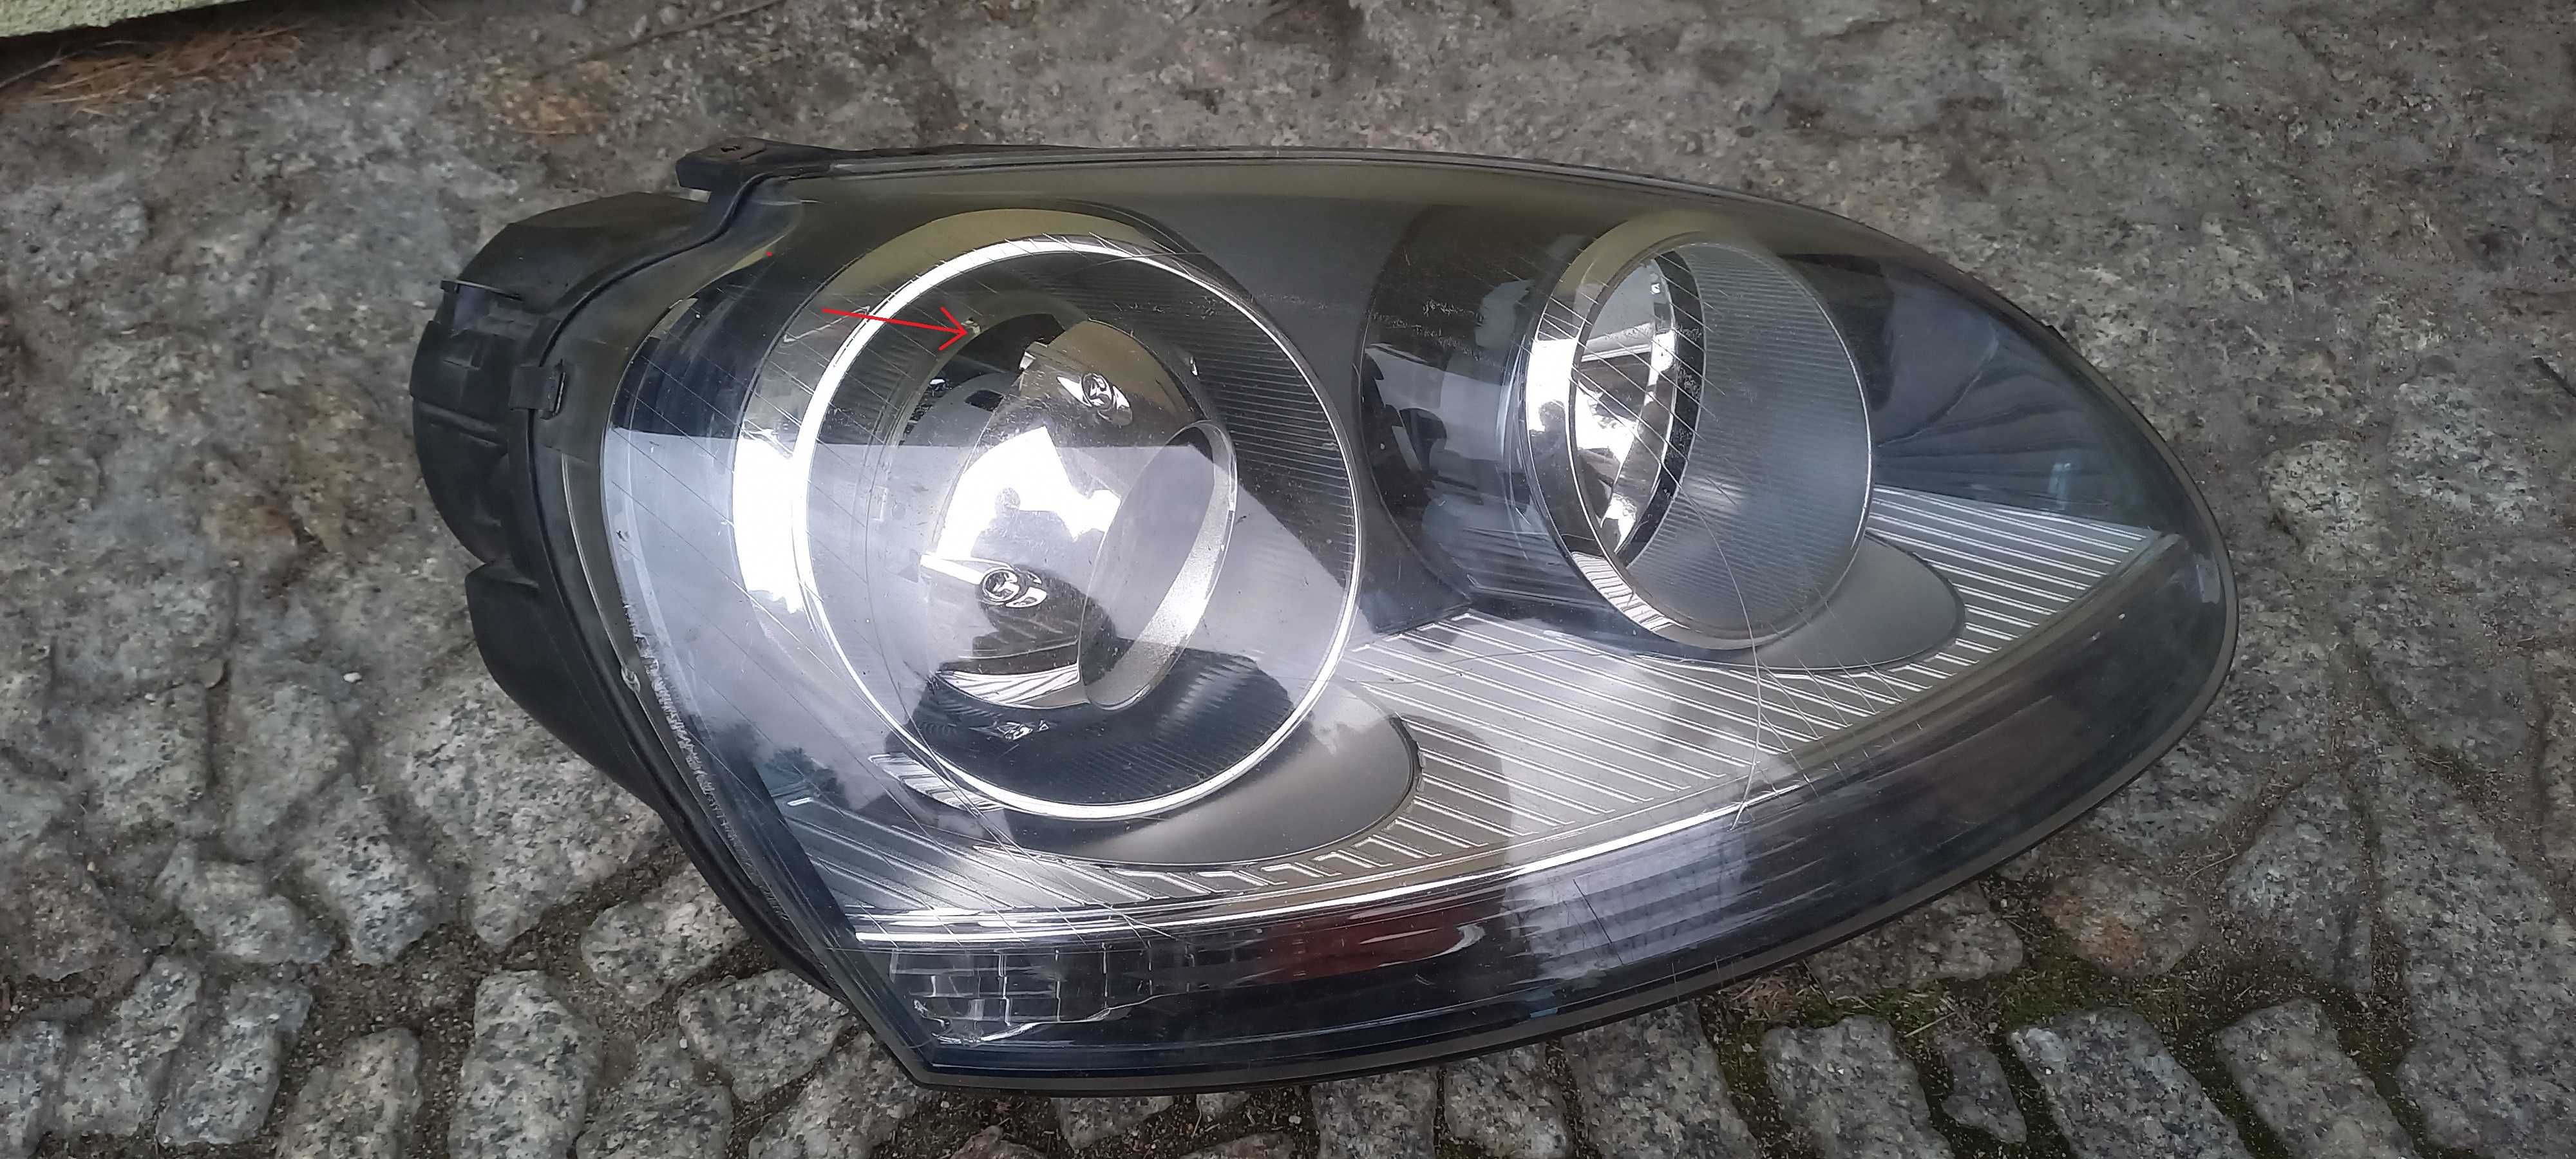 Lampa reflektor prawa przednia VW golf 5 xenon oryginalna używana